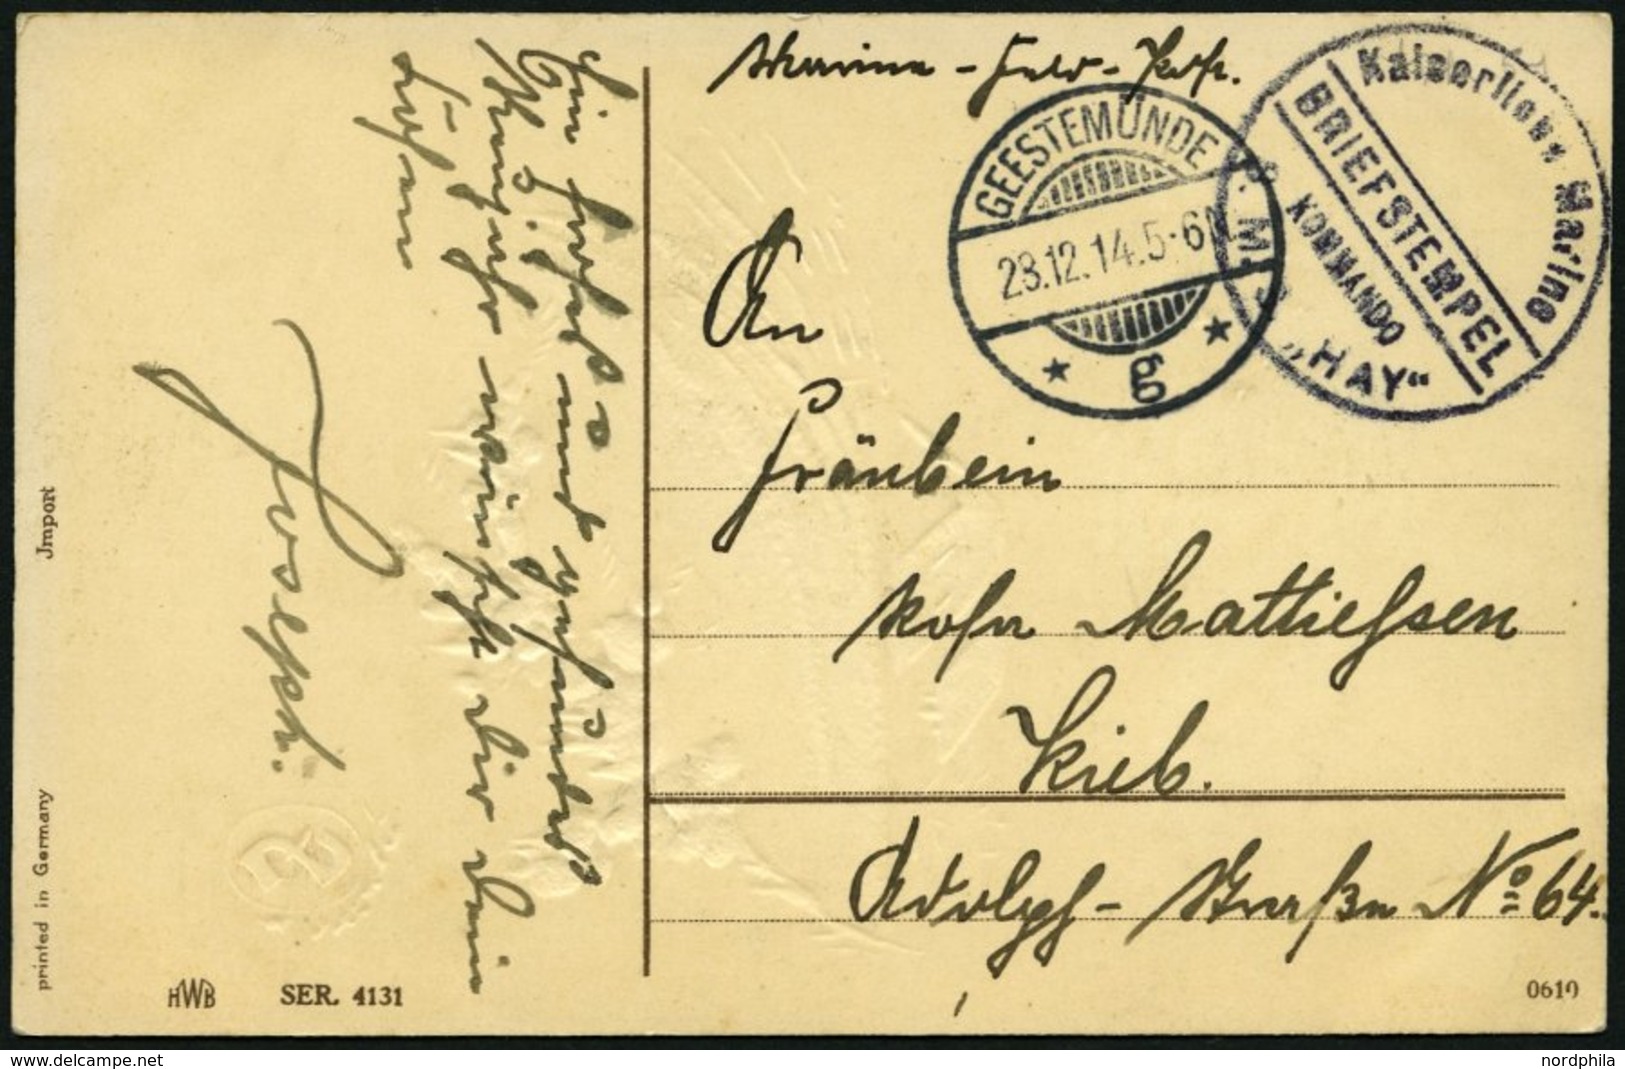 MSP VON 1914 - 1918 S.M.S. HAY, 28.12.14, Violetter Briefstempel Auf Ansichtskarte, Pracht - Marítimo